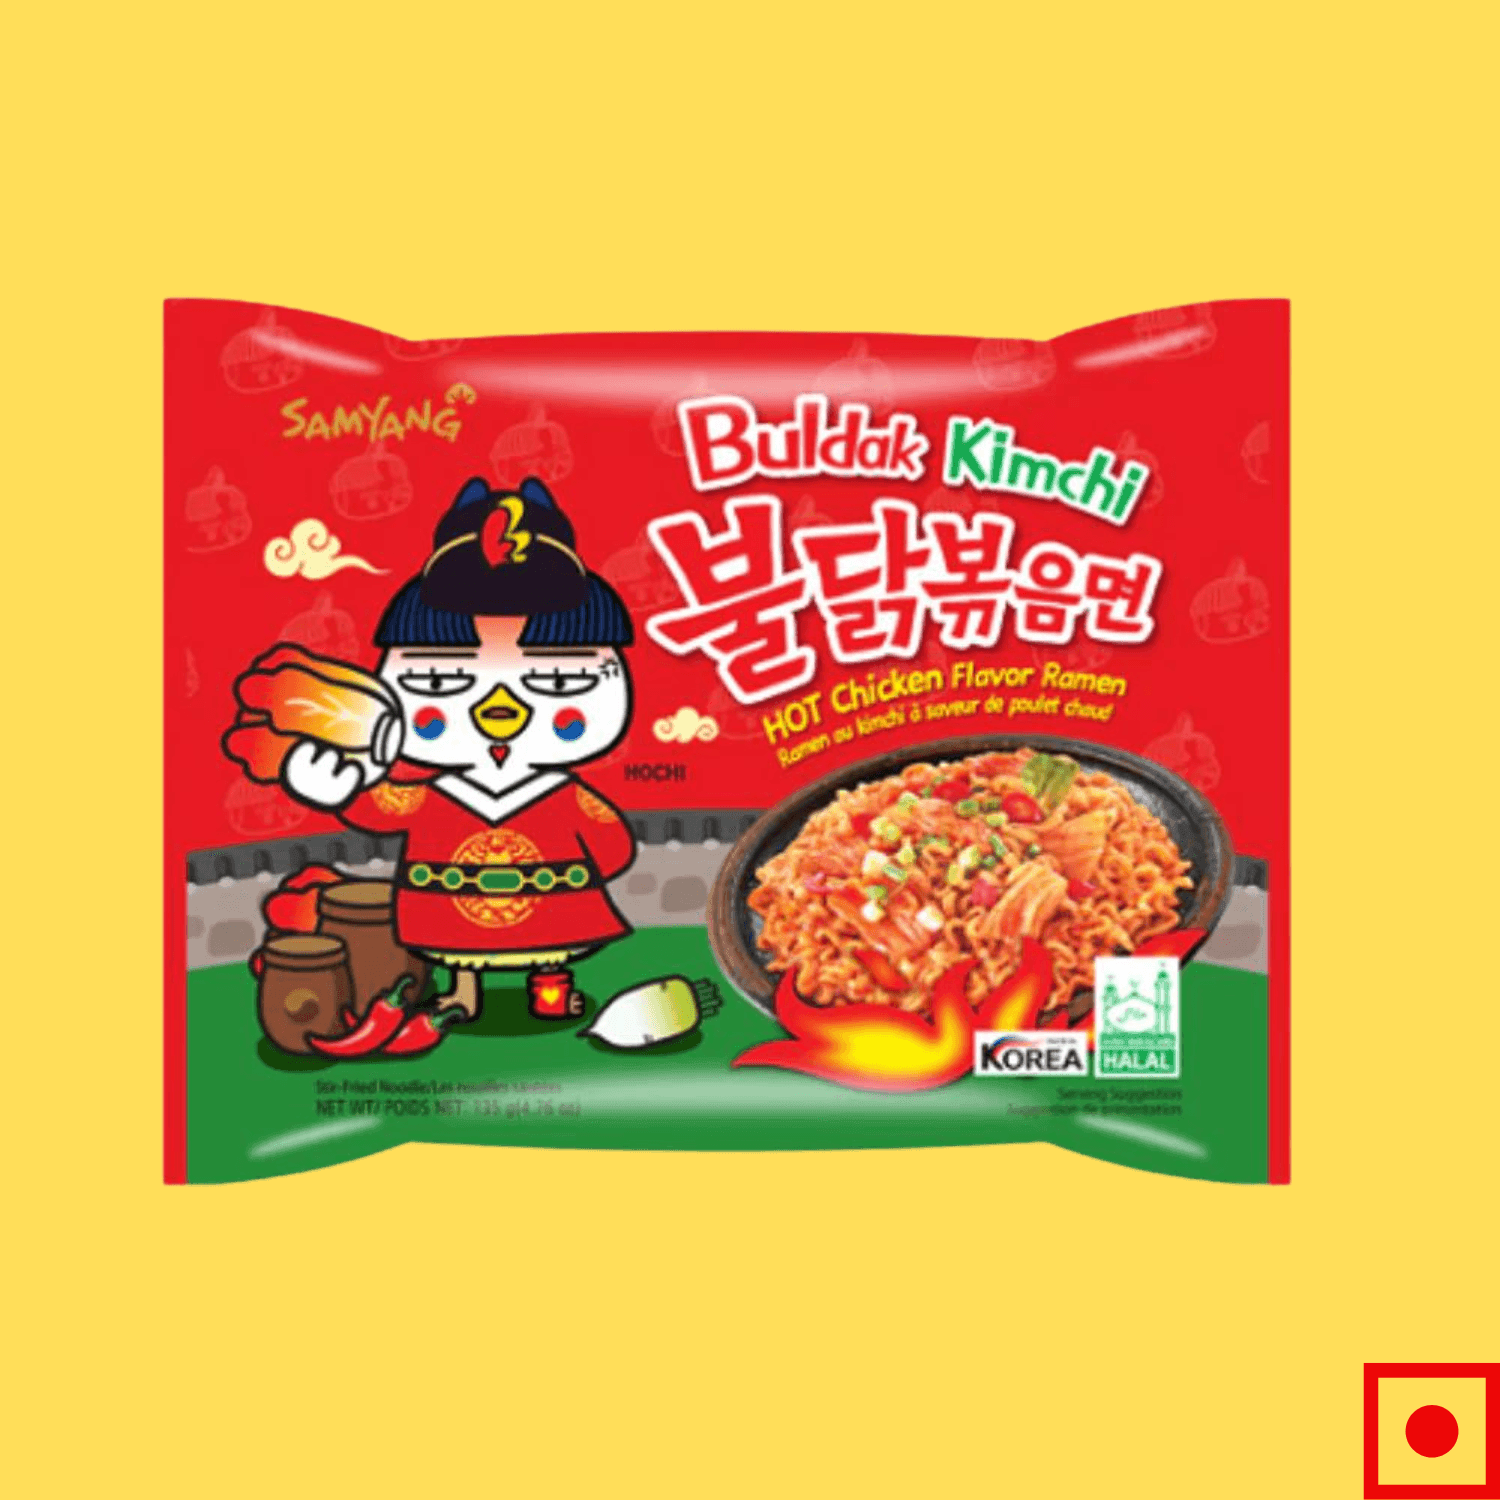 Samyang Hot Chicken Ramen Buldak Kimchi Noodles,135g (Imported) - Super 7 Mart